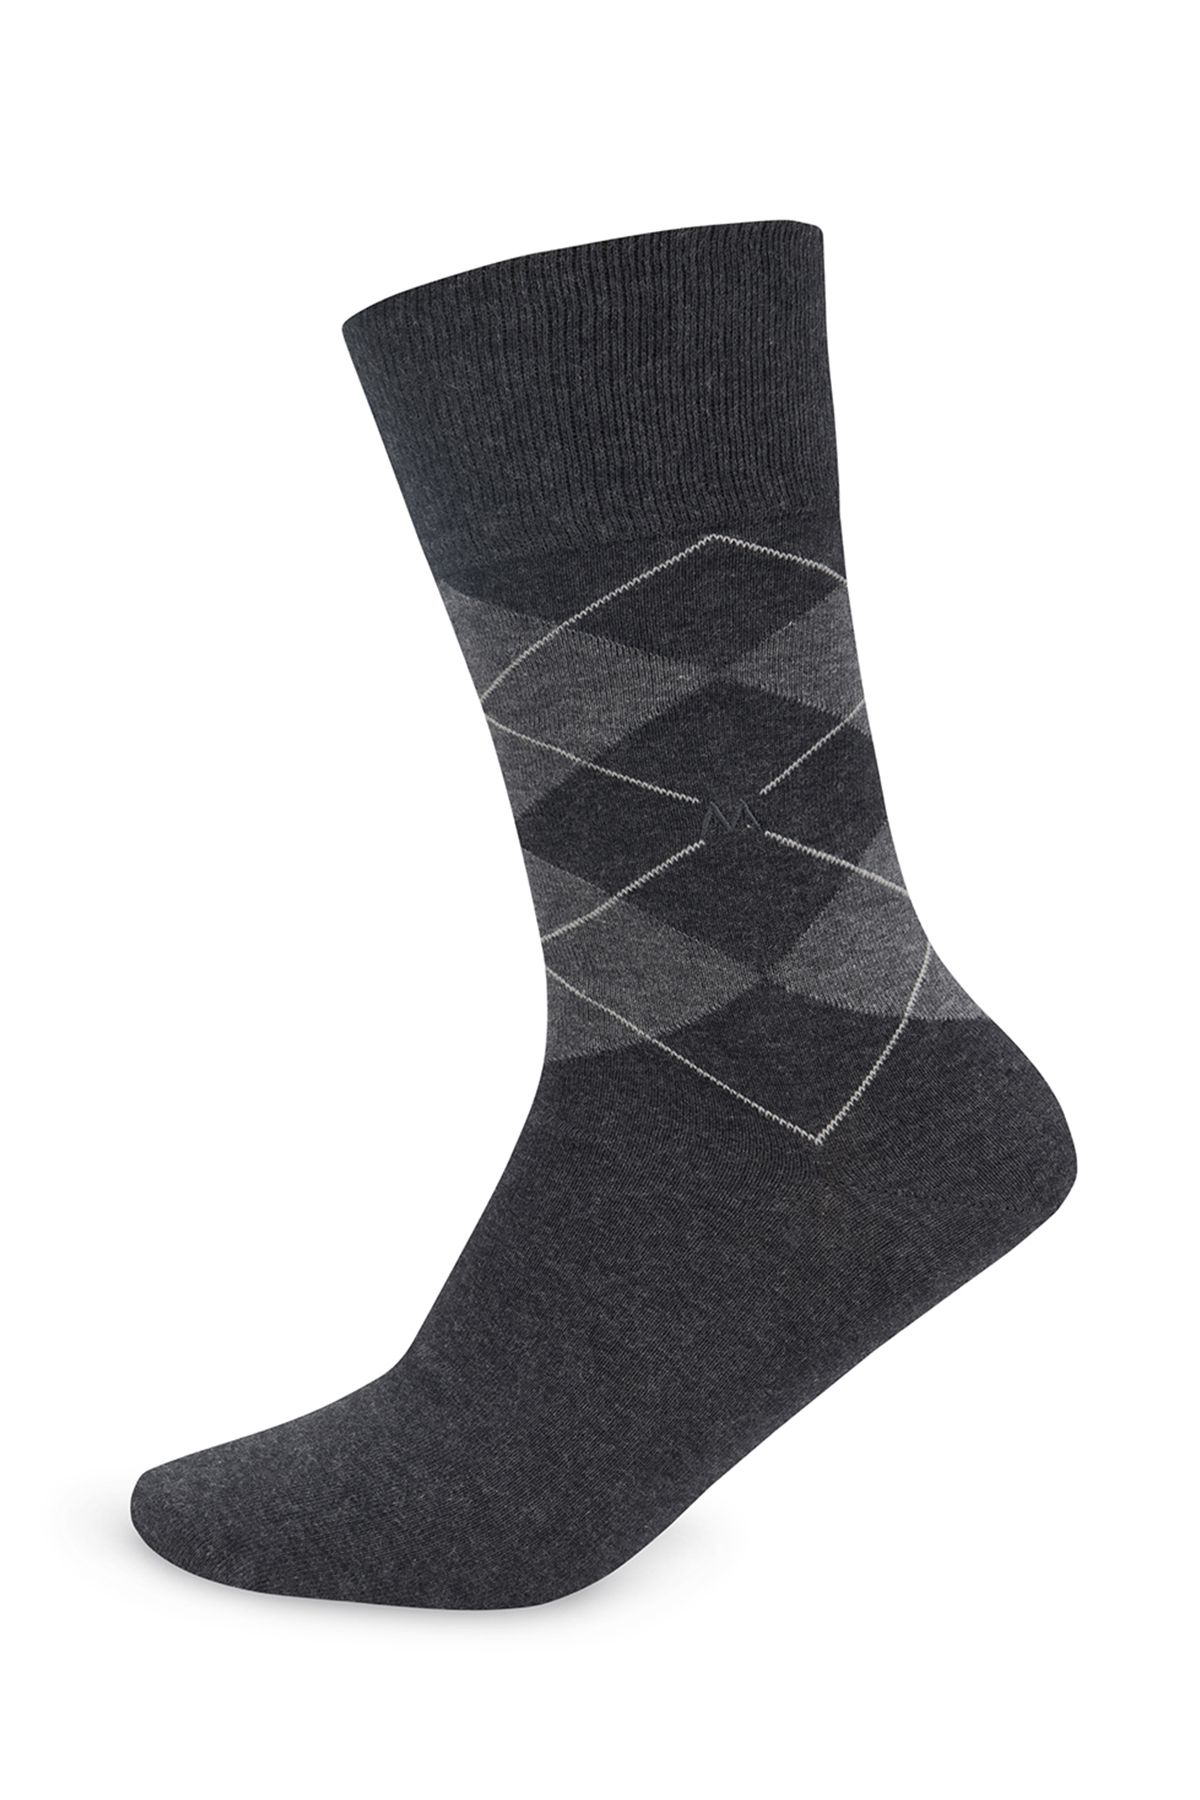 Hemington Antrasit Baklava Desenli Pamuk Çorap